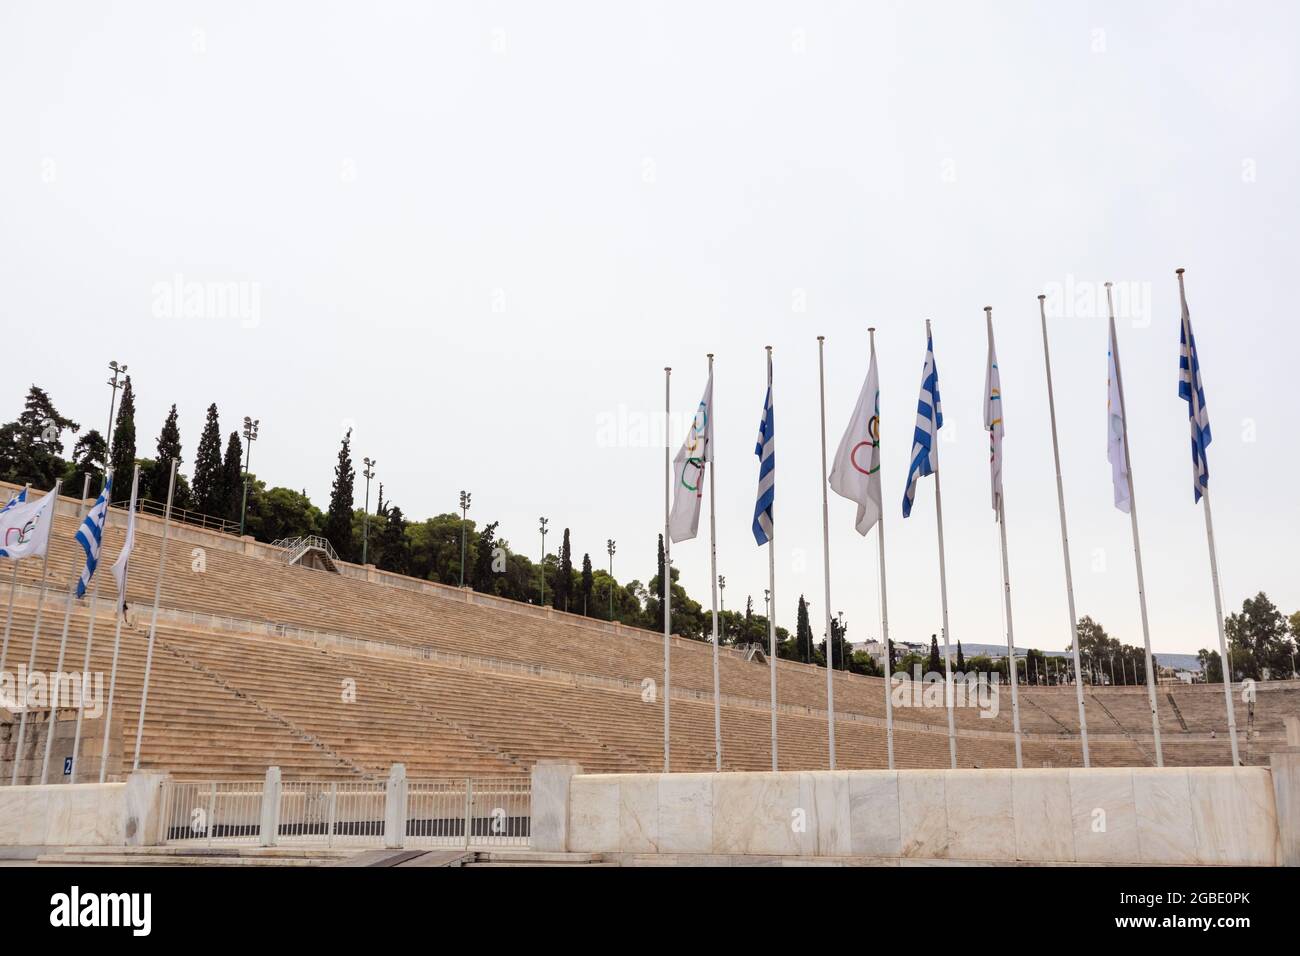 Stadio Panathenaic unico stadio al mondo in marmo bianco, ingresso ai giochi olimpici con bandiere. Attrazione attica di un giorno nuvoloso Foto Stock